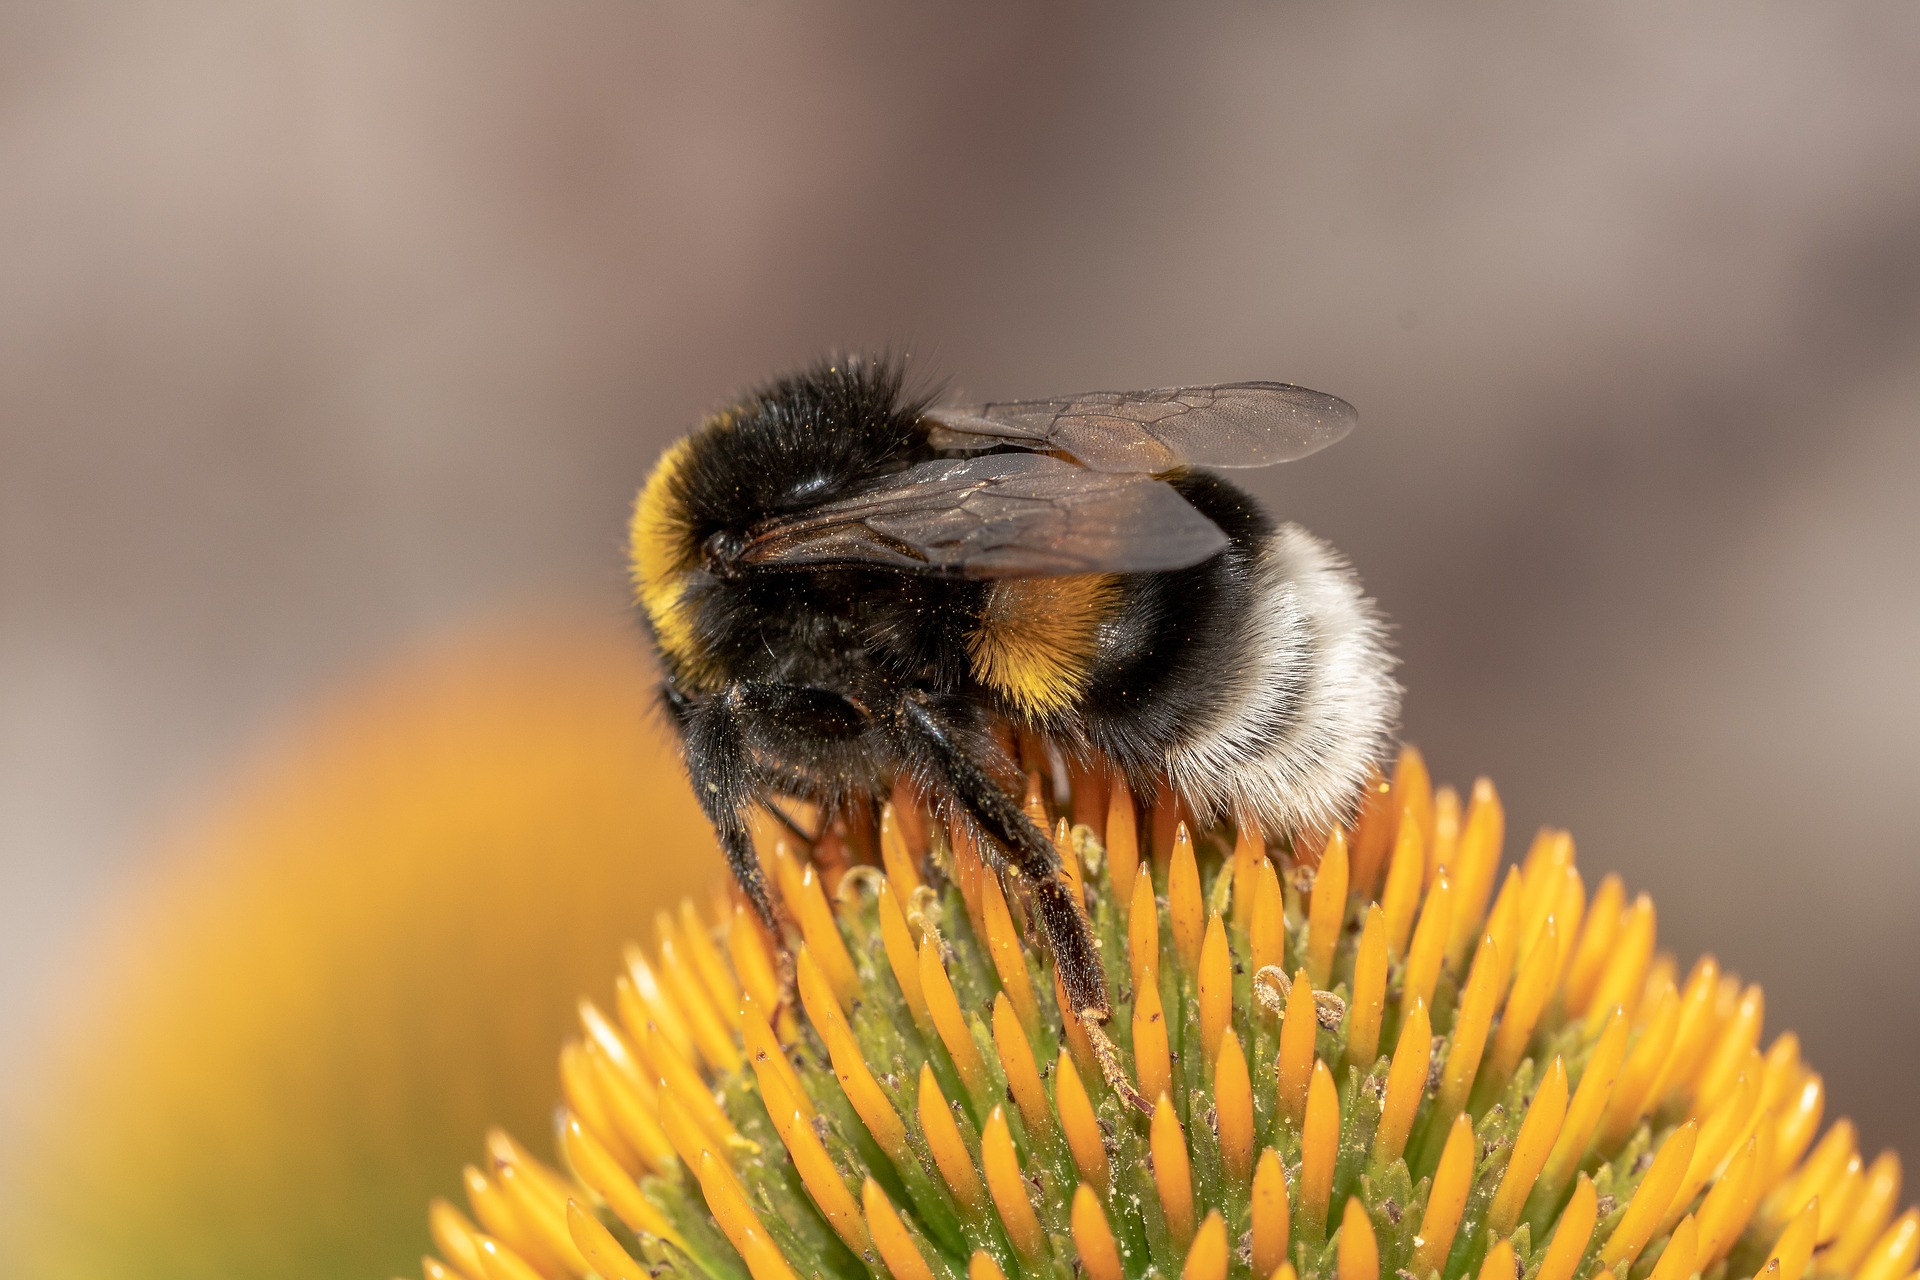 A razão pela qual amamos abelhas e odiamos marimbondos - BBC News Brasil